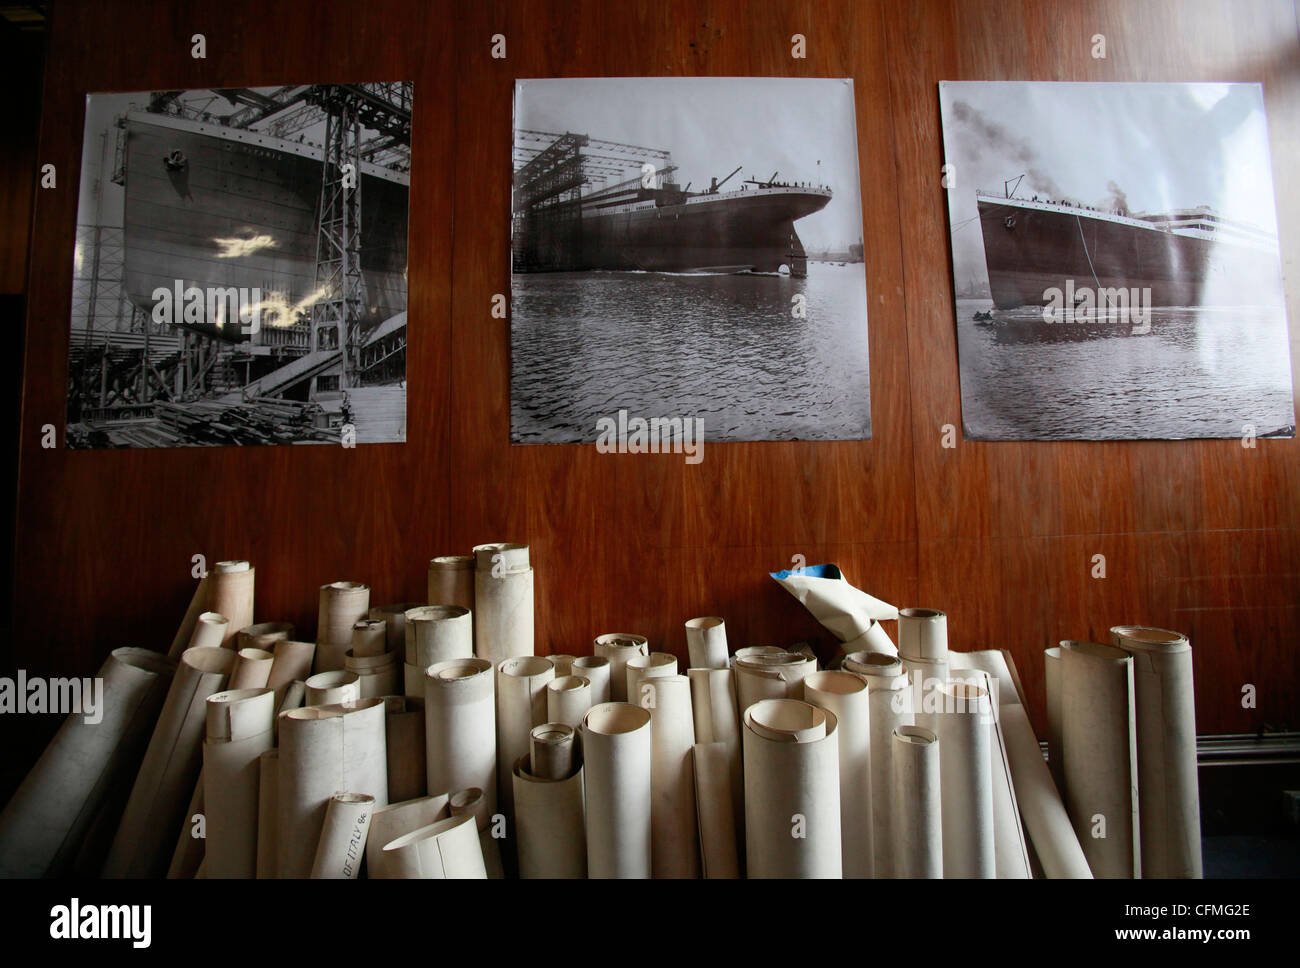 Vecchio dislocante disegni magra contro una parete con fotografie del Titanic nave inutilizzata Harland & Wolff disegno Foto Stock